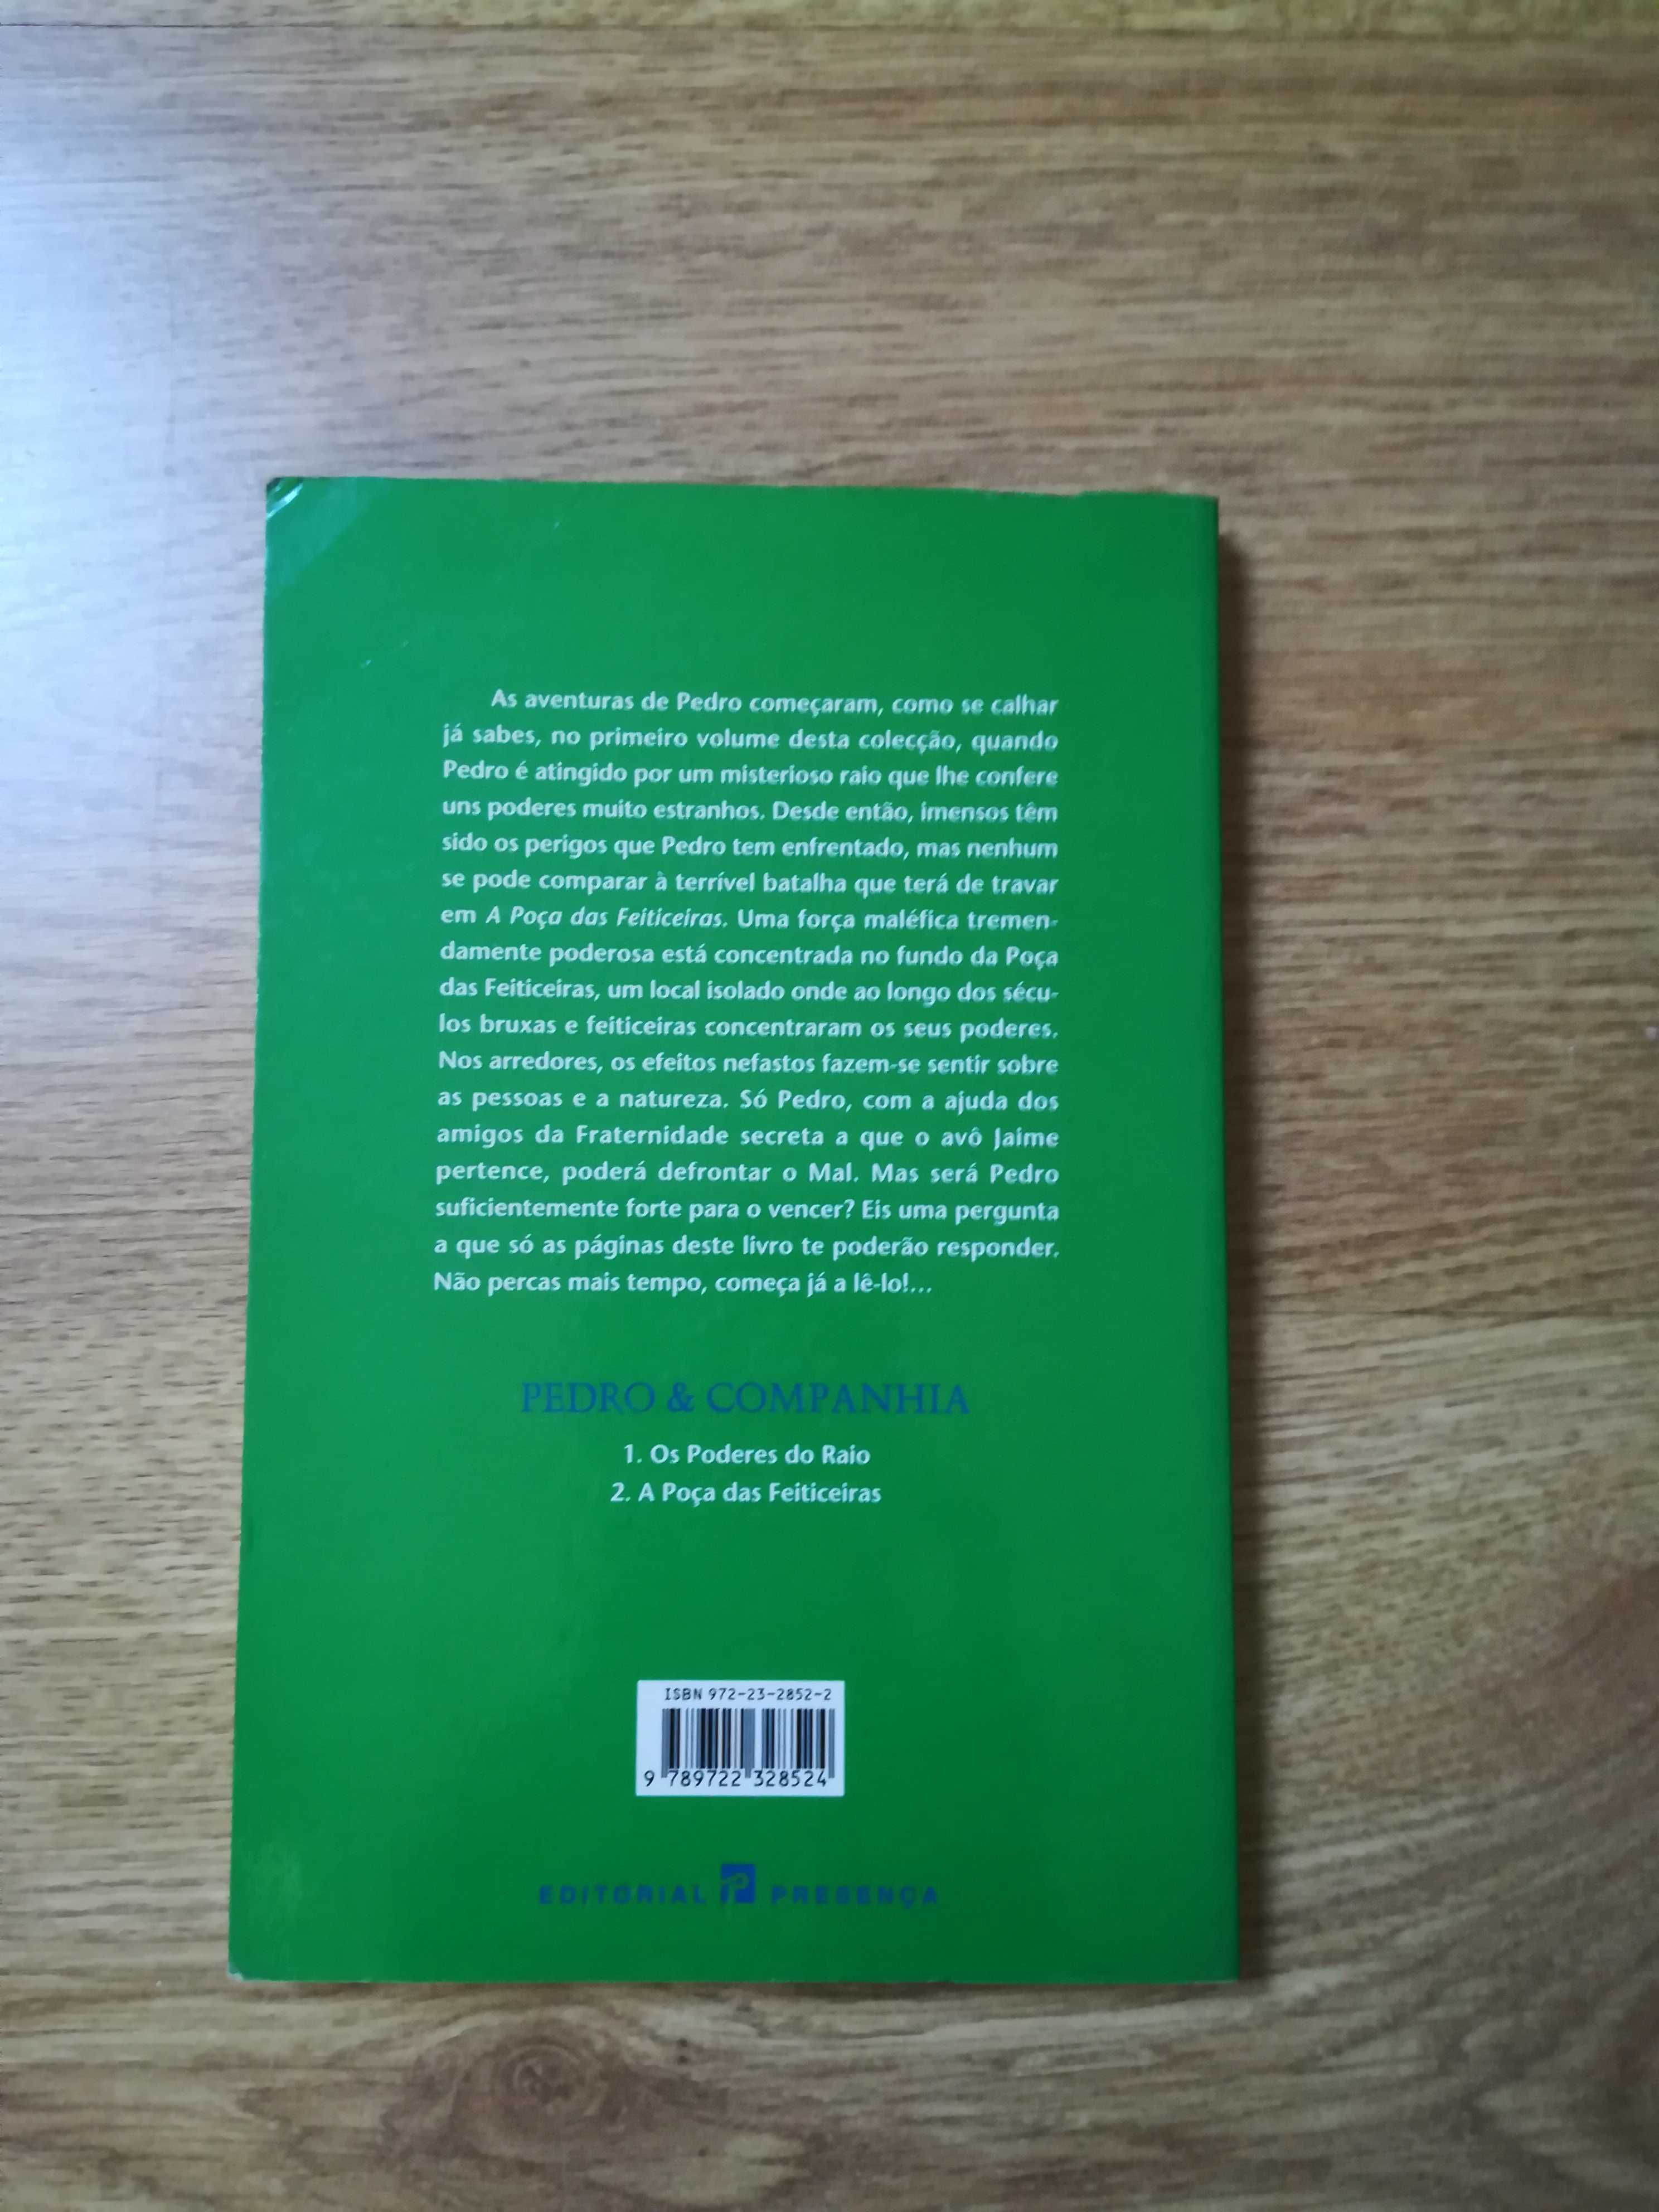 Livro "A Poça das Feiticeiras" Nº2 de João Aguiar